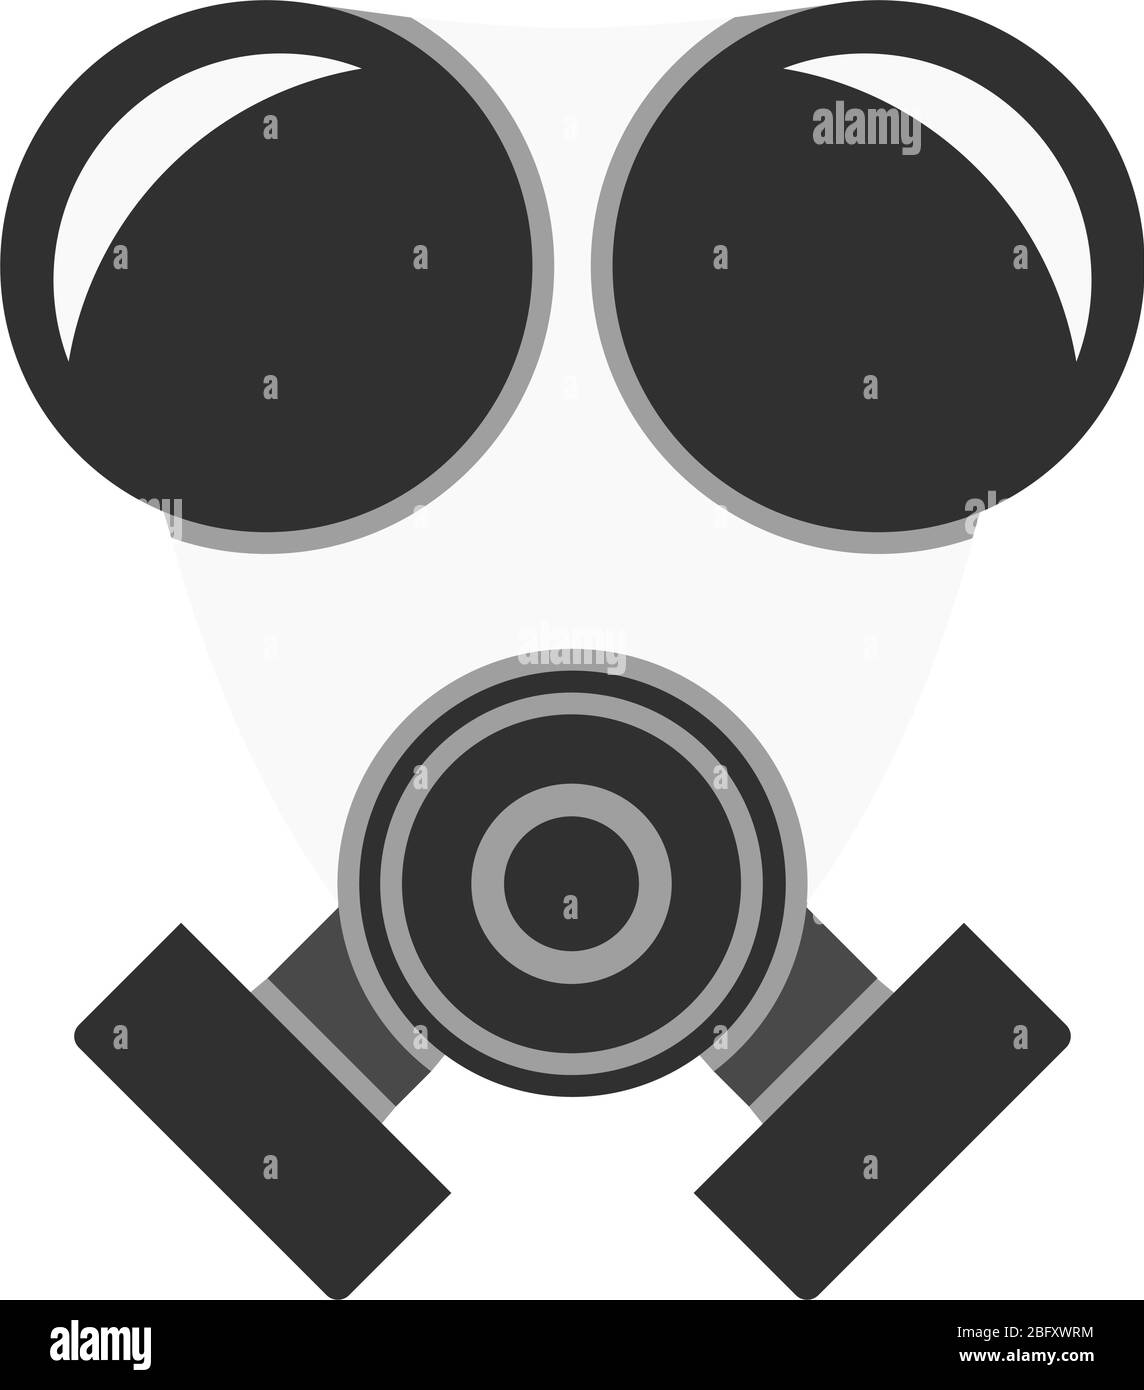 Eine Grafik eines Atemschutzgeräts, das auf Baustellen oder in Krankenhäusern verwendet wird. Die Maske schützt vor Viren, Bakterien und Schadstoffen. Stock Vektor